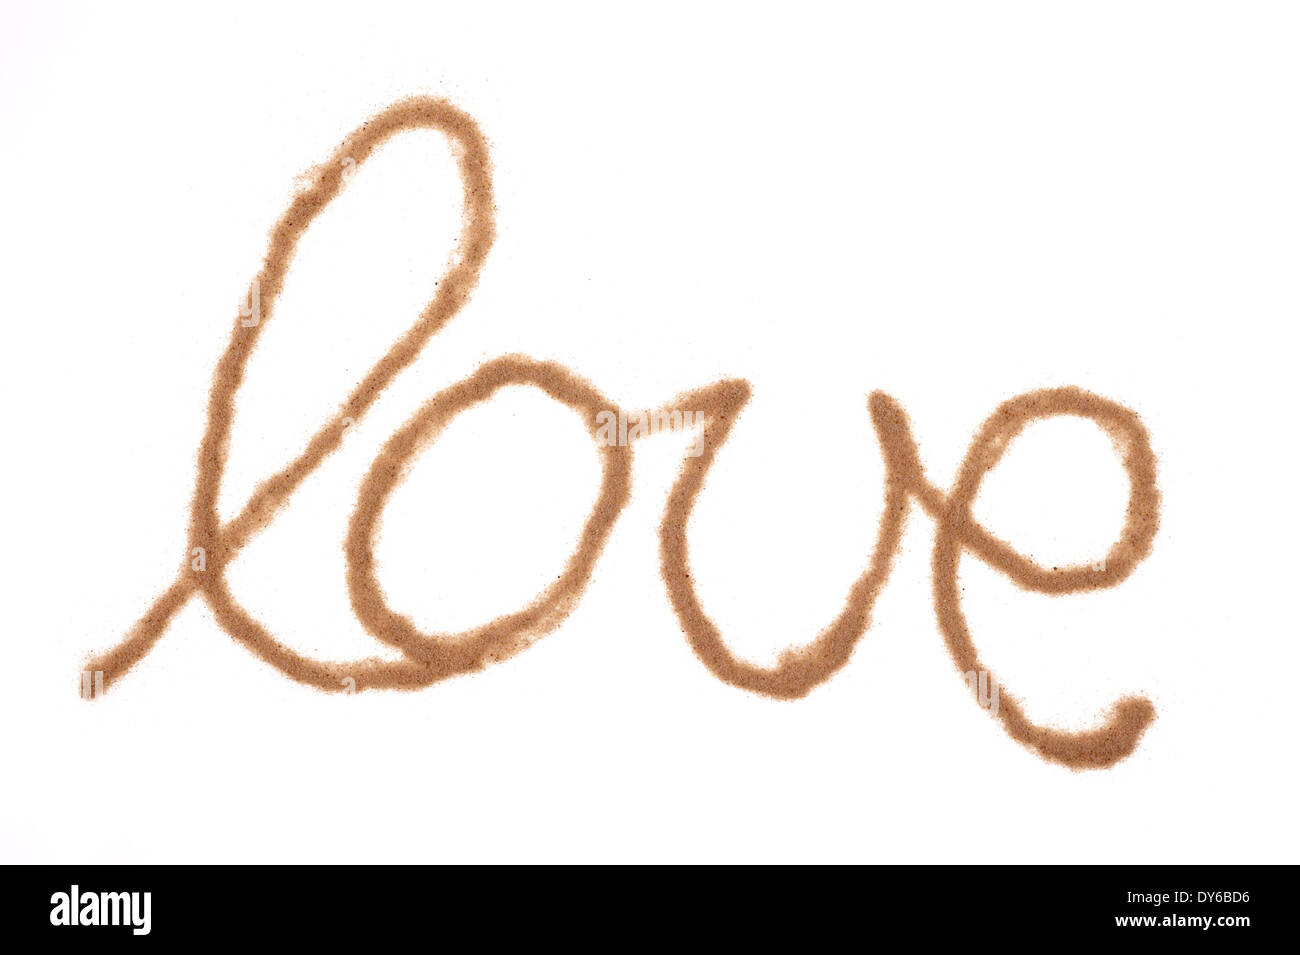 Das Wort Liebe mit Sand geschrieben Stockfoto